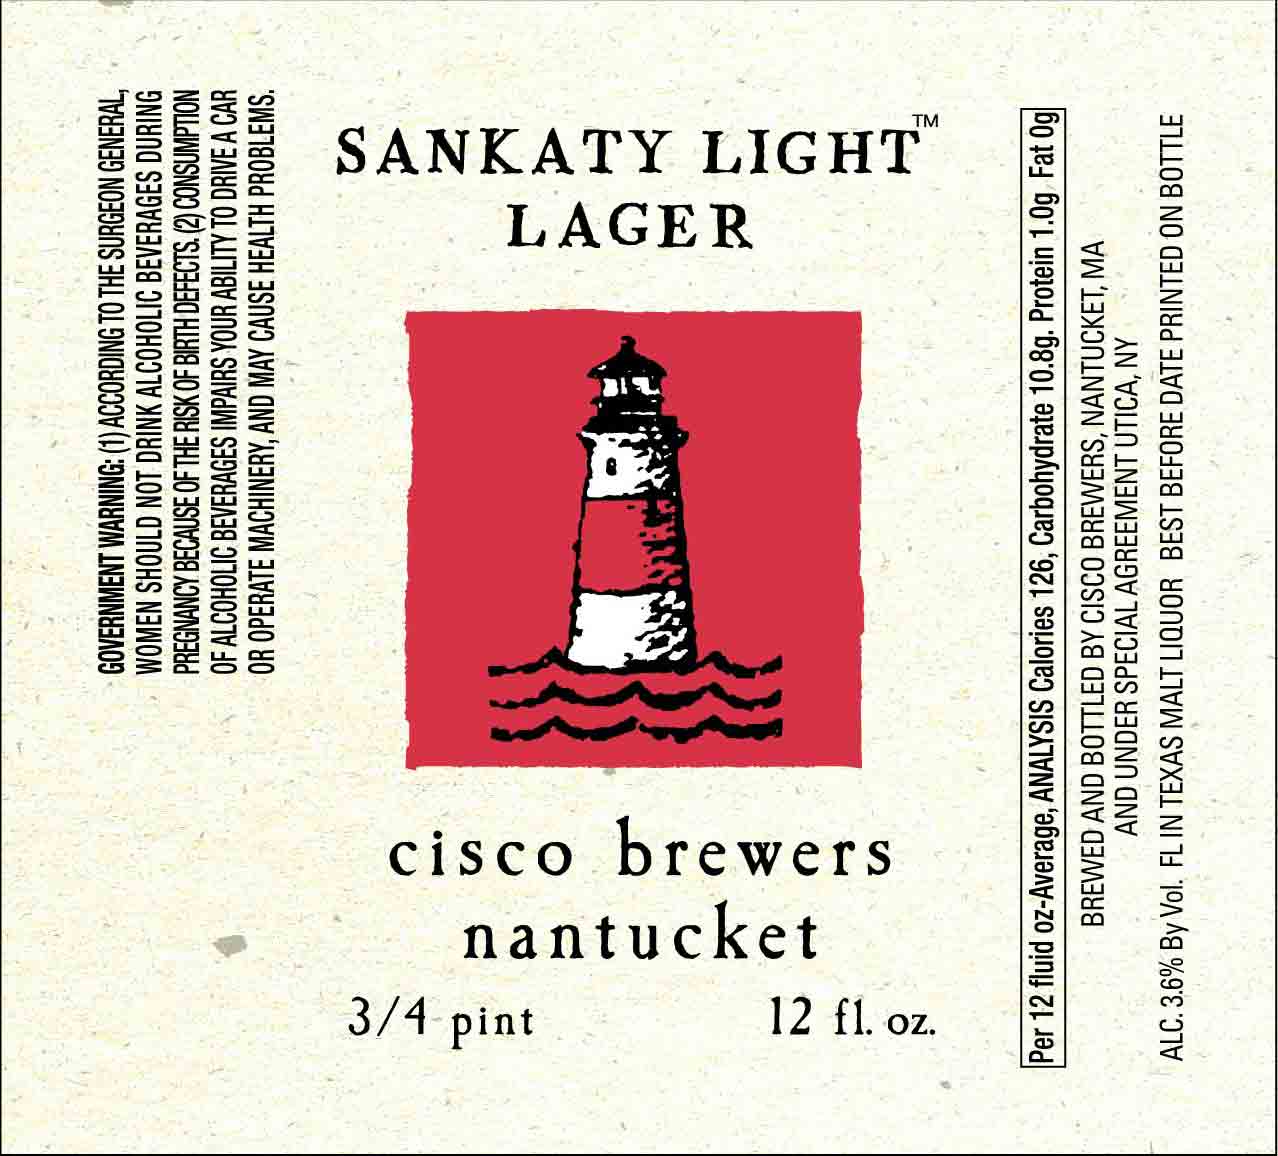 Cisco Brewing Sankaty Light Lager